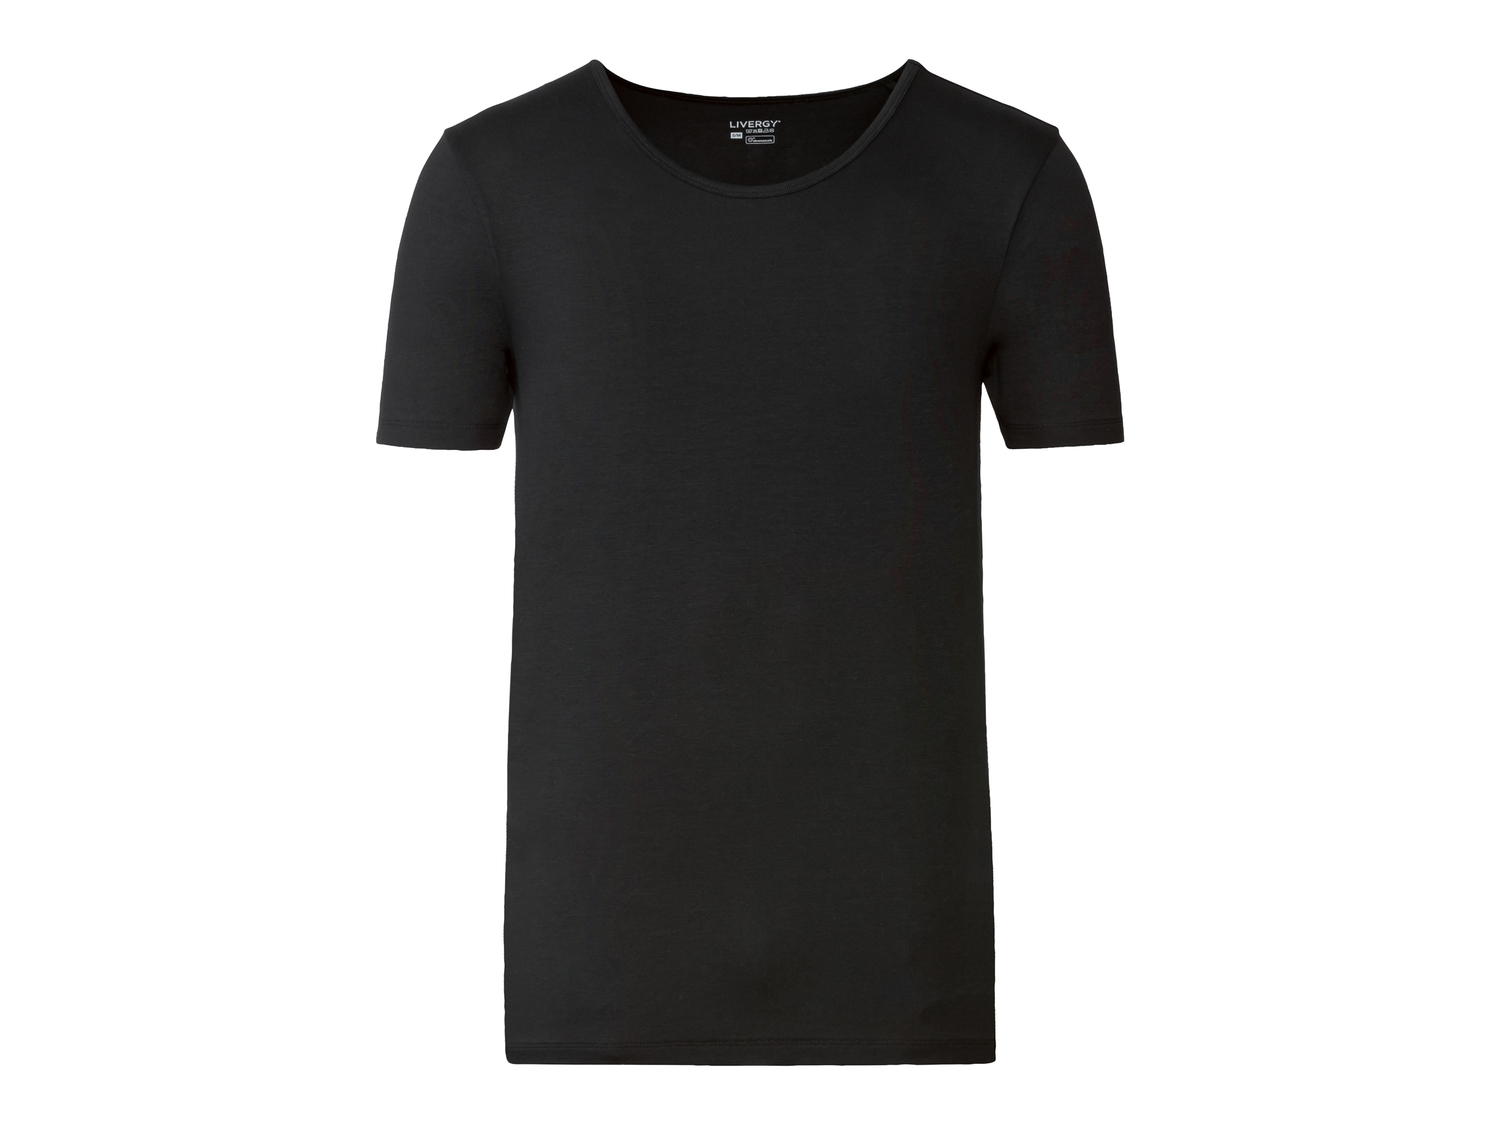 T-shirt intima da uomo Livergy, prezzo 6.99 &#8364; 
Misure: M-XL 
- Con fibre ...